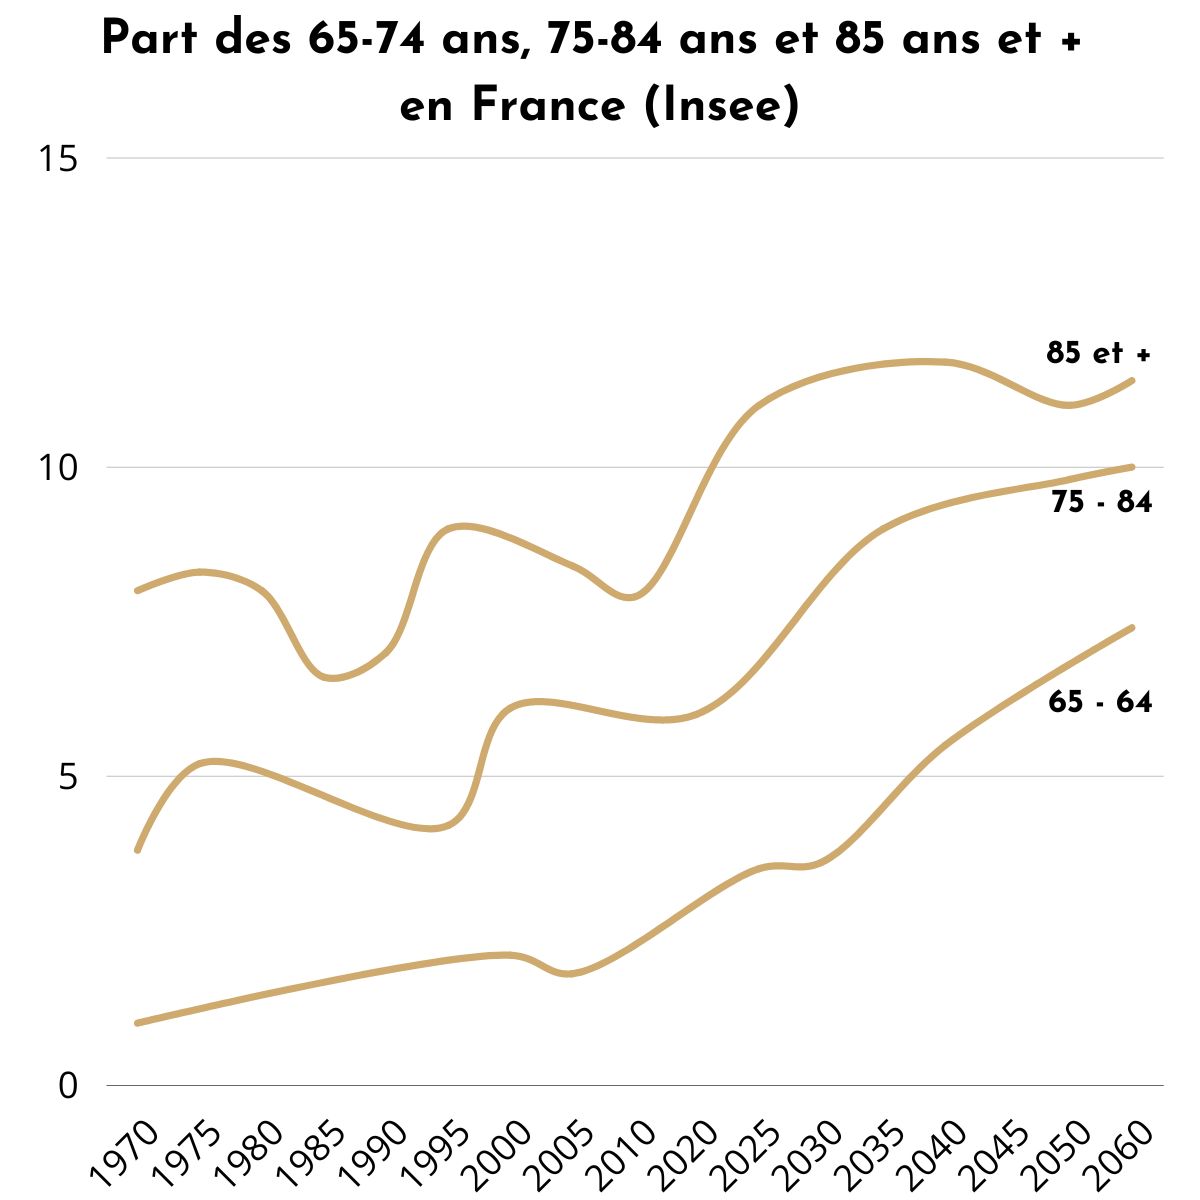 Evolution de la part des 75 ans et plus en France